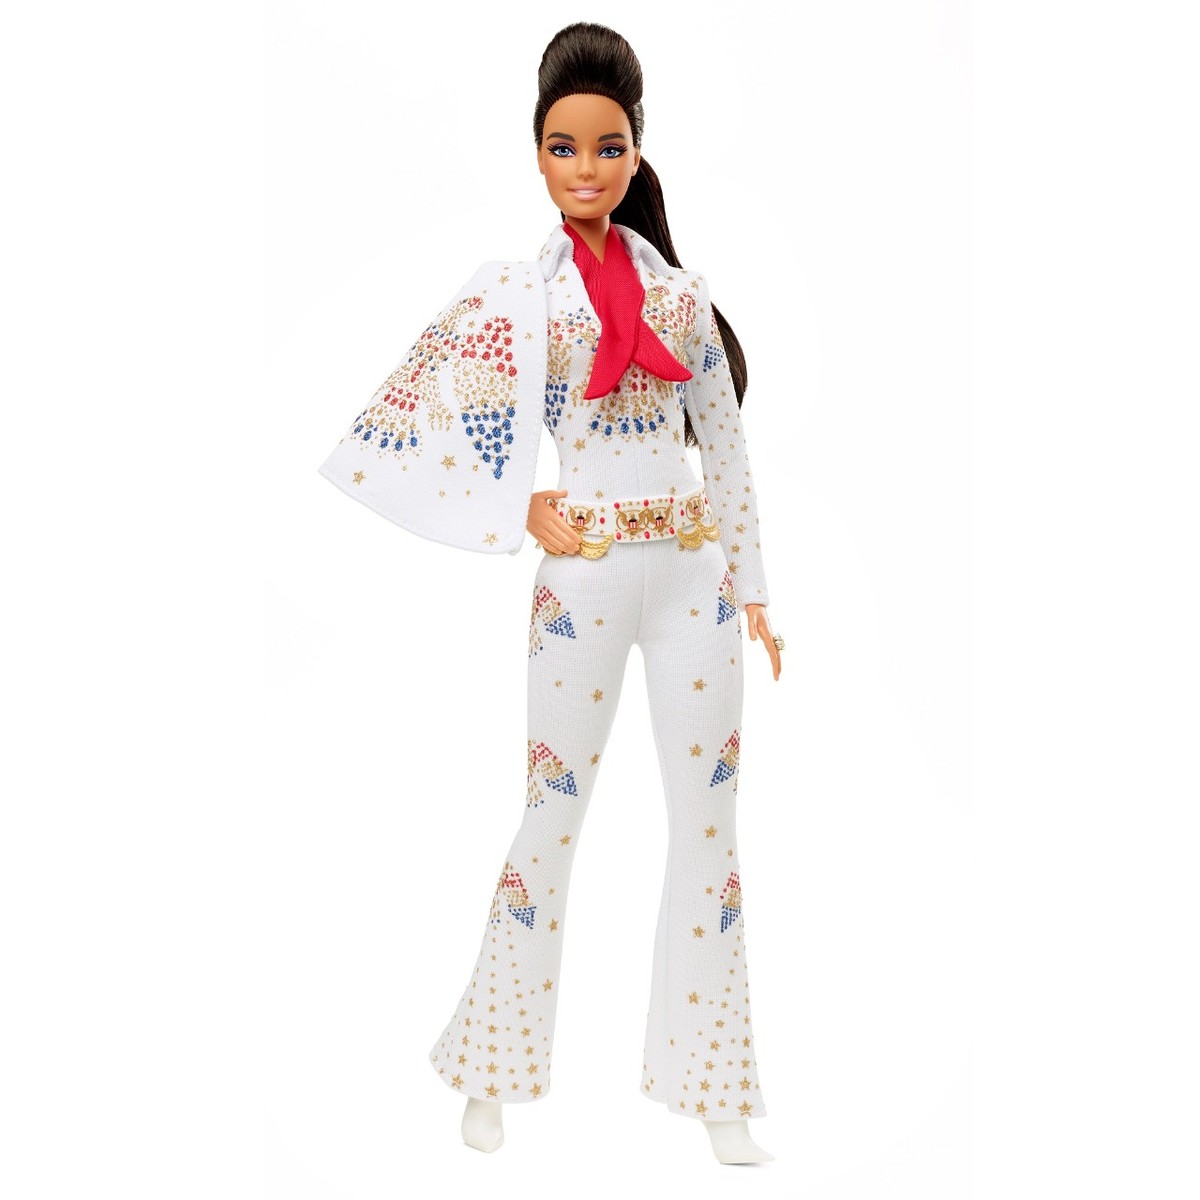 Edição especial da boneca Barbie celebra Elvis Presley | Pop & Arte